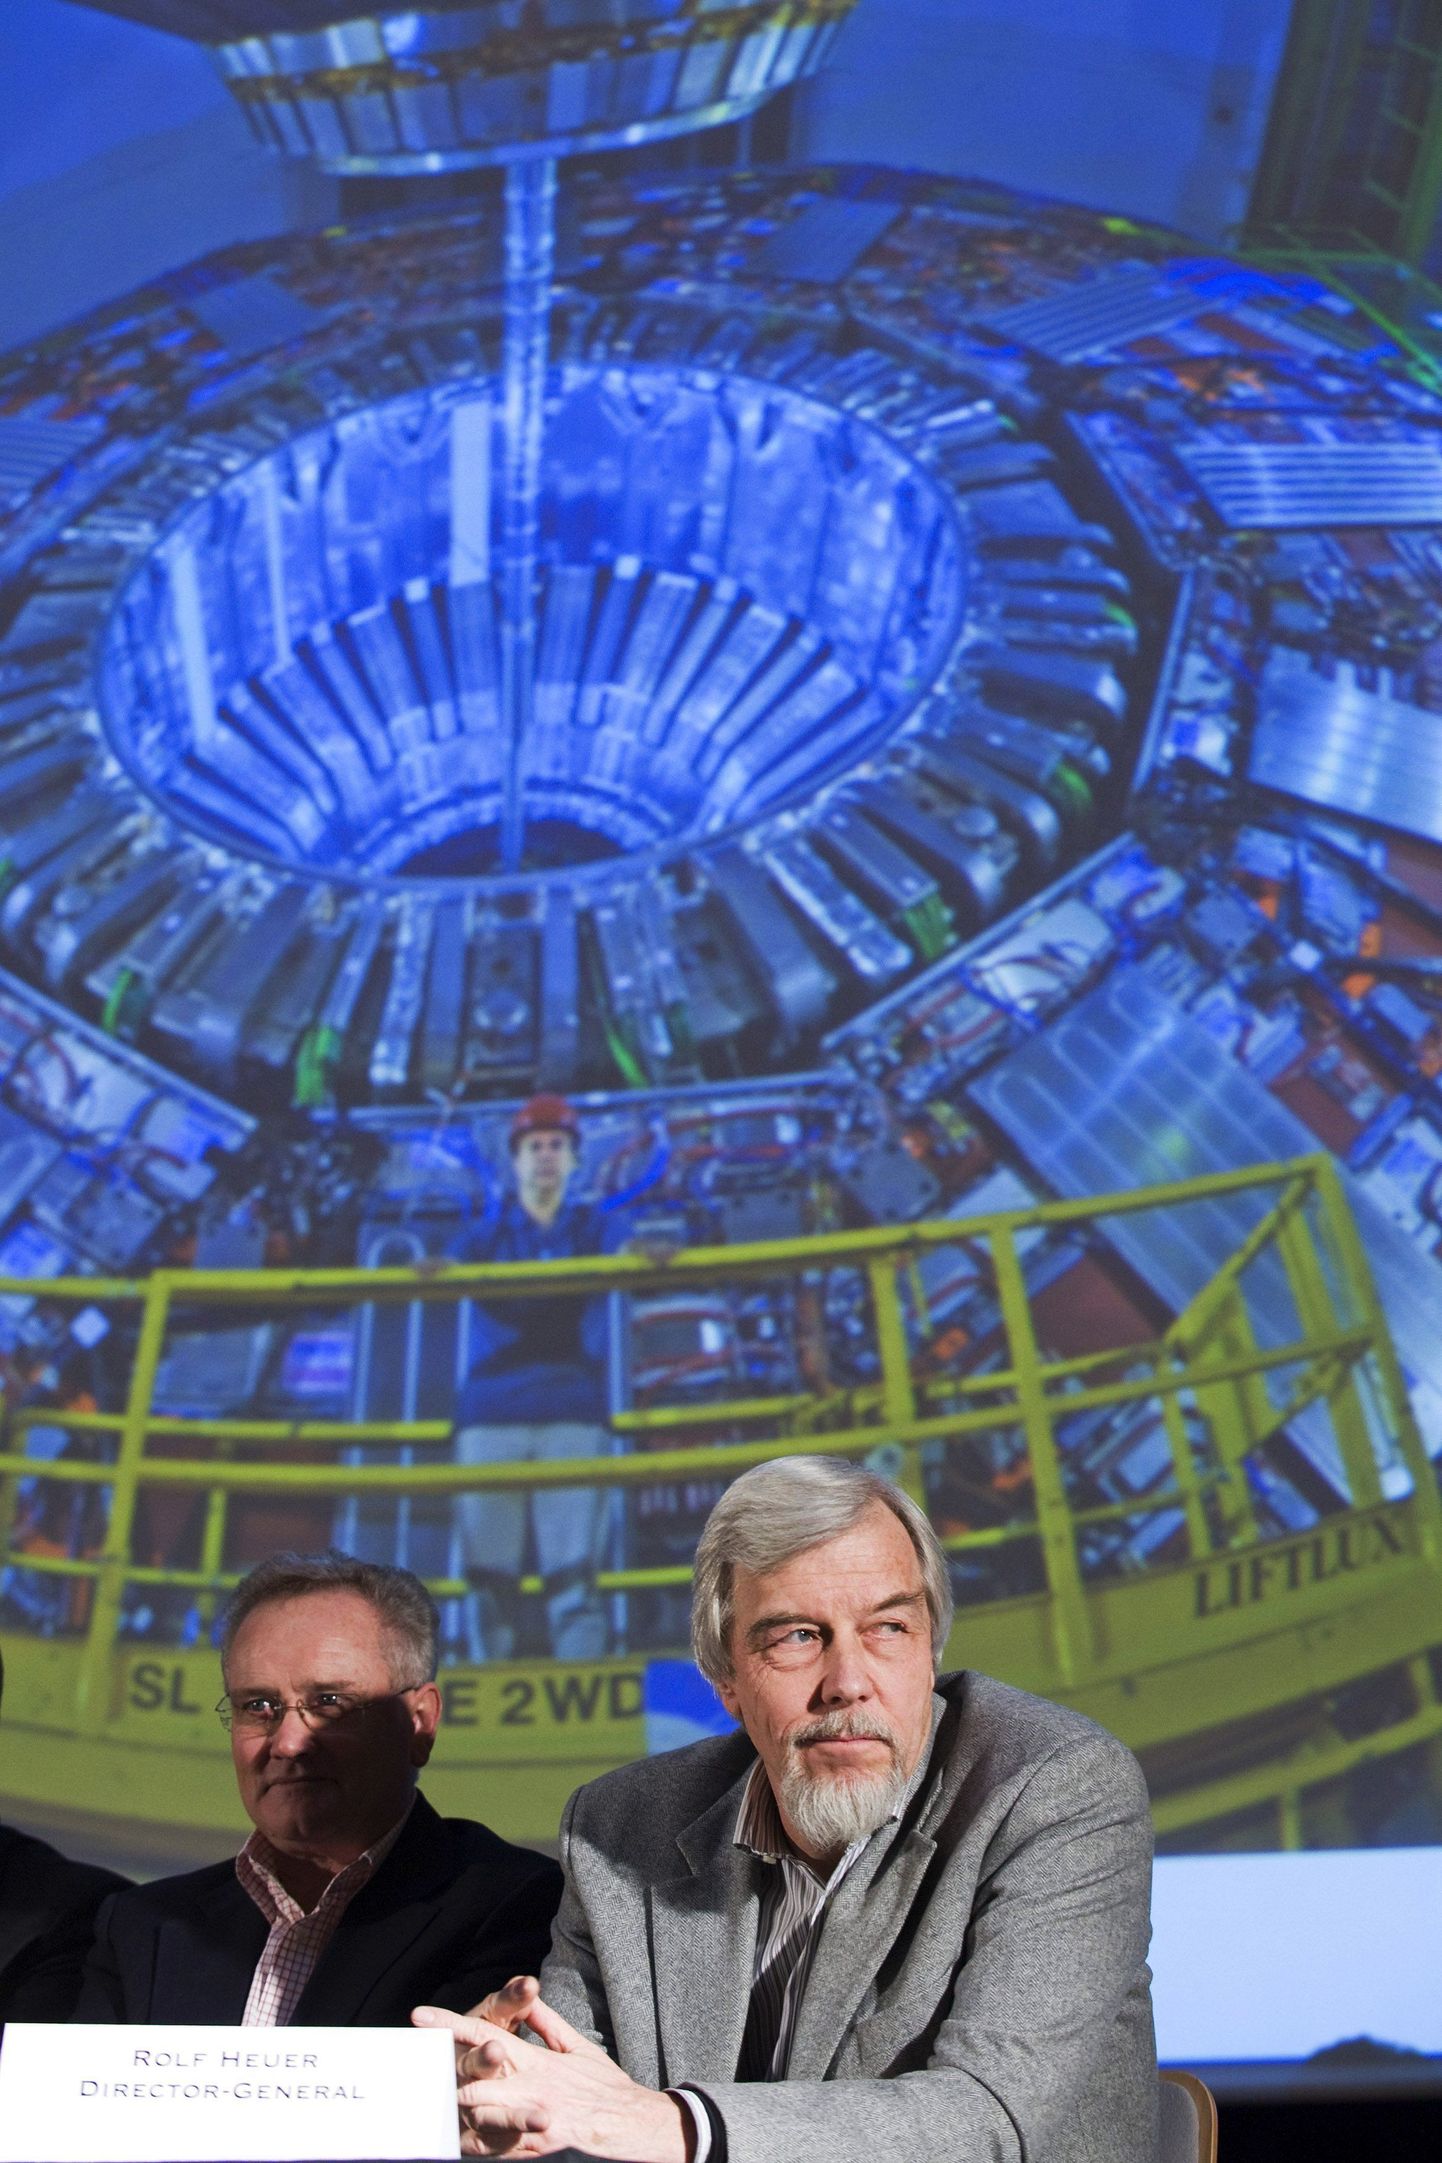 CERNi direktor Rolf-Dieter Heuer (paremal) ja Steve Myers, CERNi kiirendite ja tehnoloogia osakonna juht pressikonverentsil.